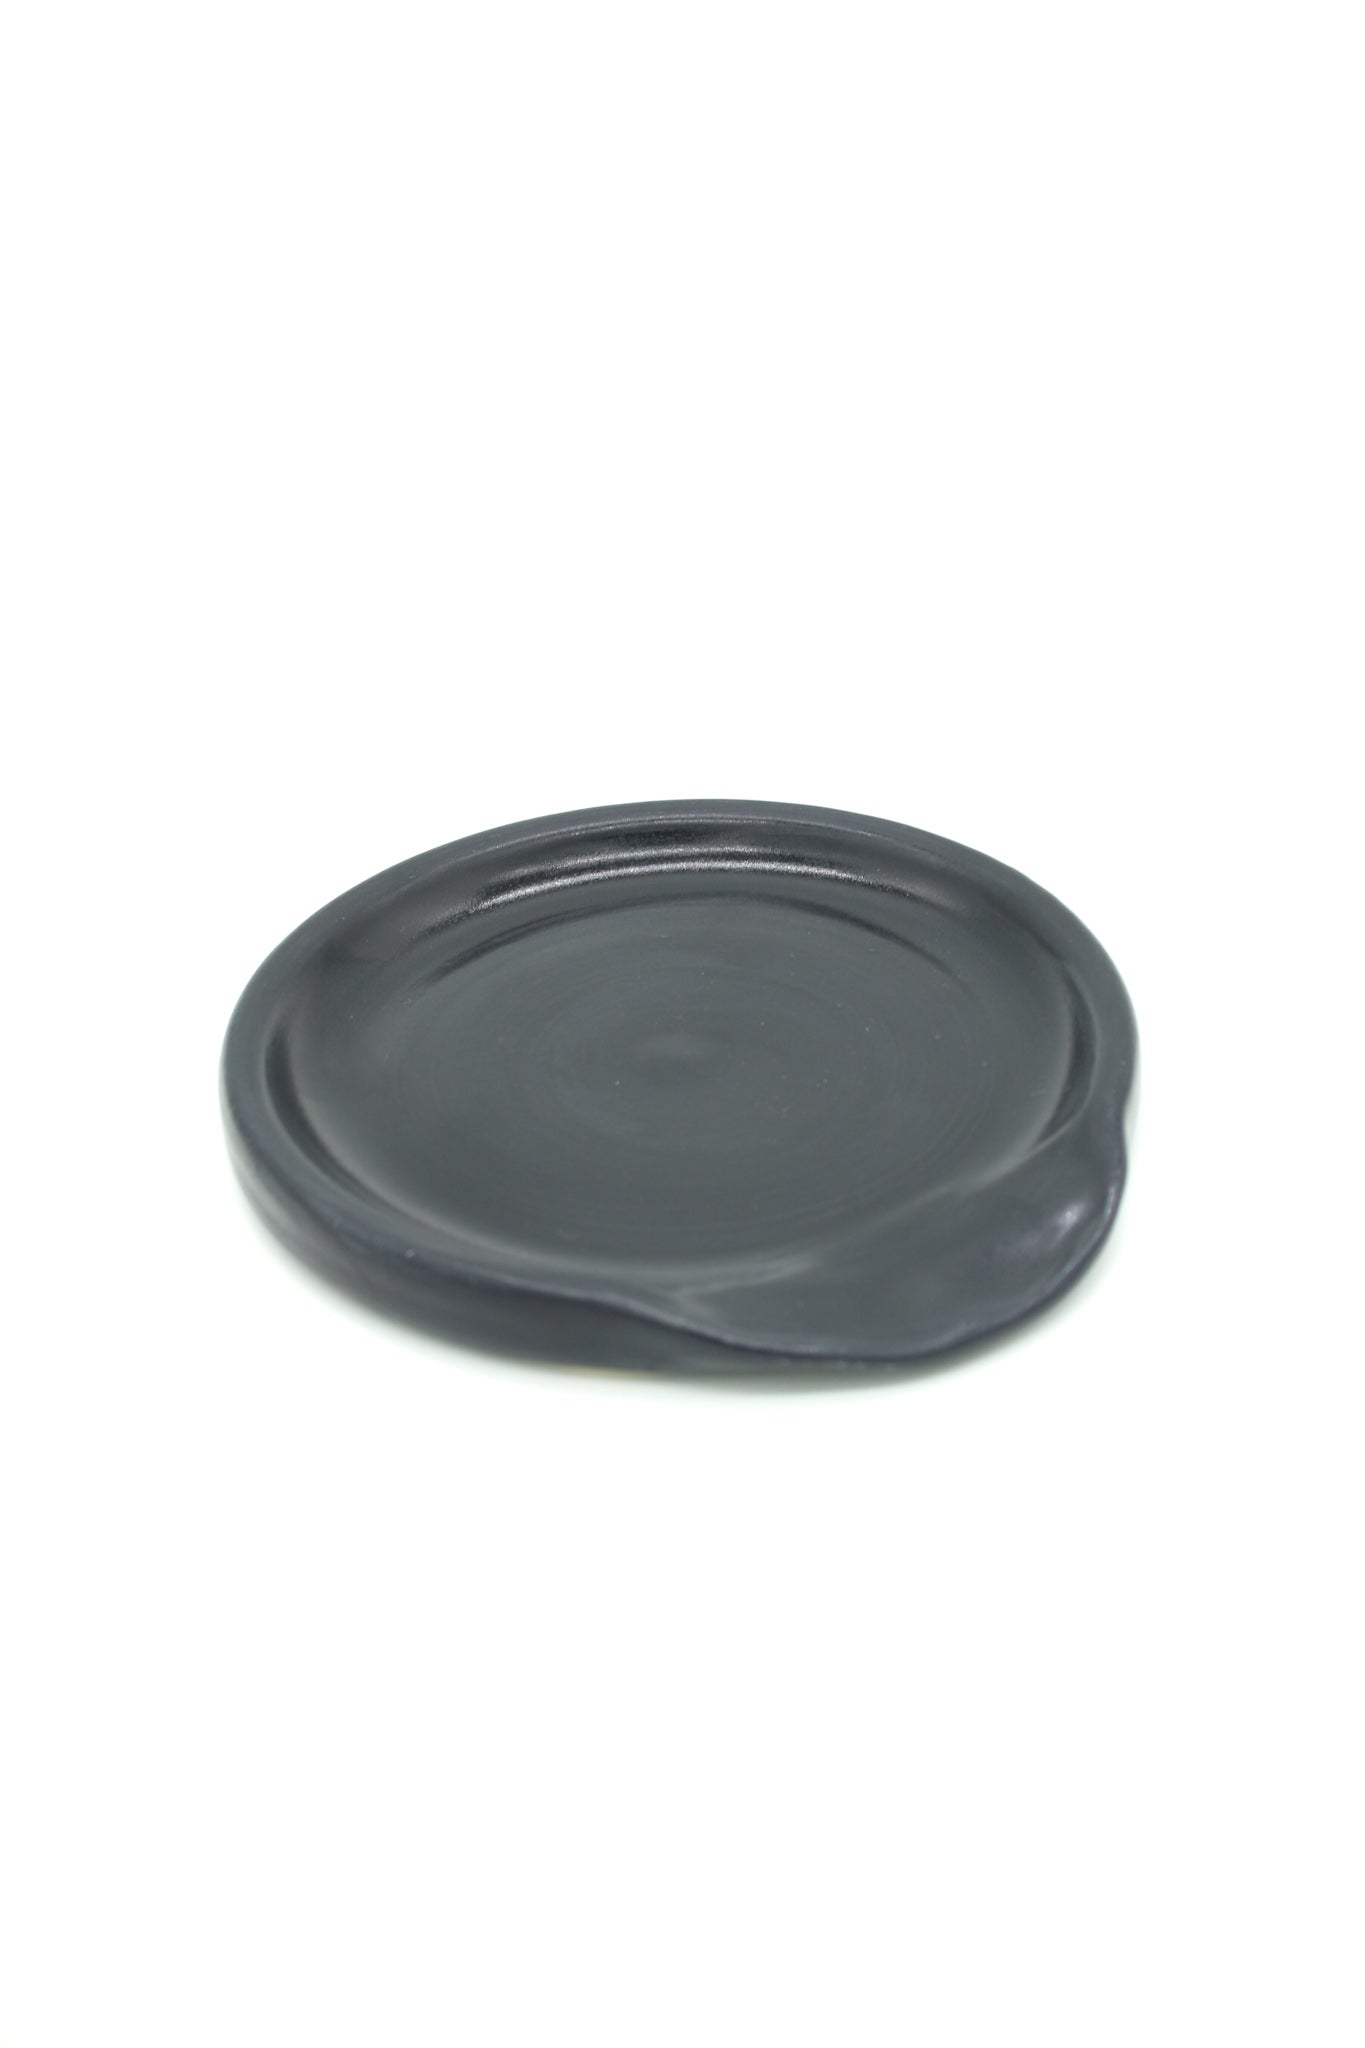 Black Satin Matte Stoneware Ceramic Spoon Rest - Wheel Thrown, Minimalist, Modern, Simple, Handmade Kitchenware